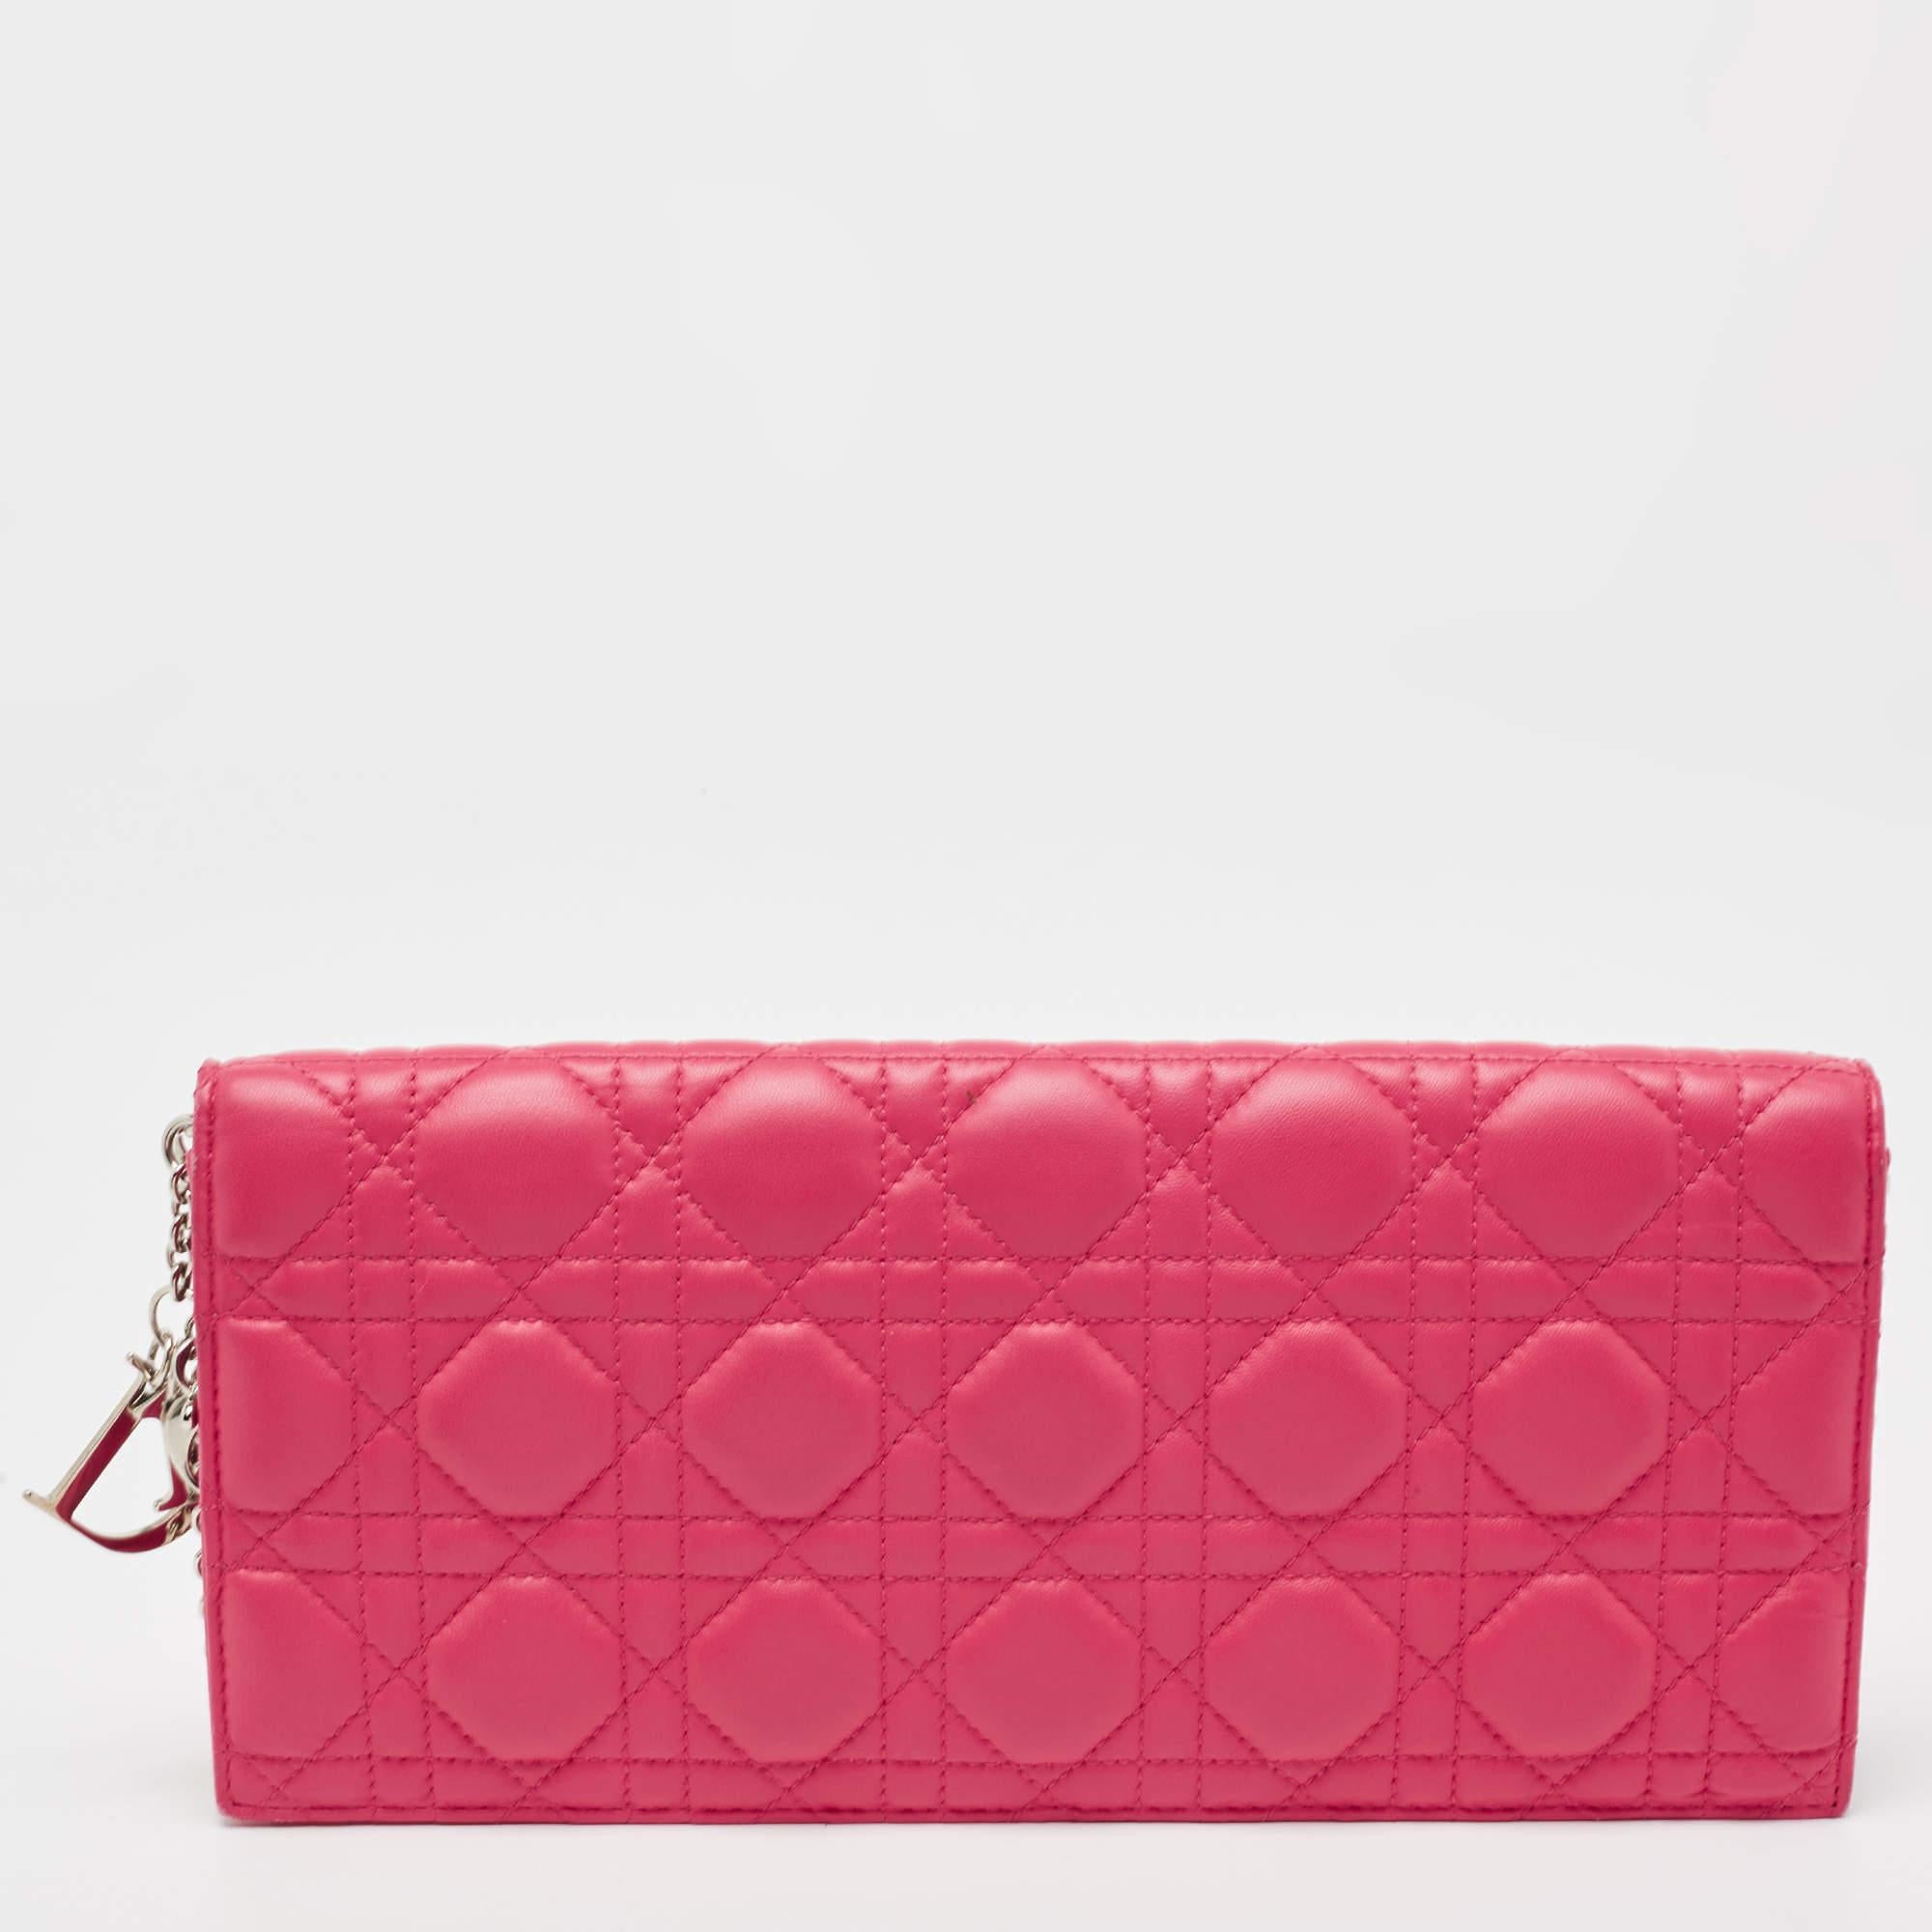 Cette pochette Lady Dior est conçue pour un usage fréquent. Fabriqué en cuir rose, l'extérieur est orné de la courtepointe Cannage et d'une fermeture à rabat. L'intérieur doublé de tissu abrite une pochette.

Comprend : Sac de protection d'origine,